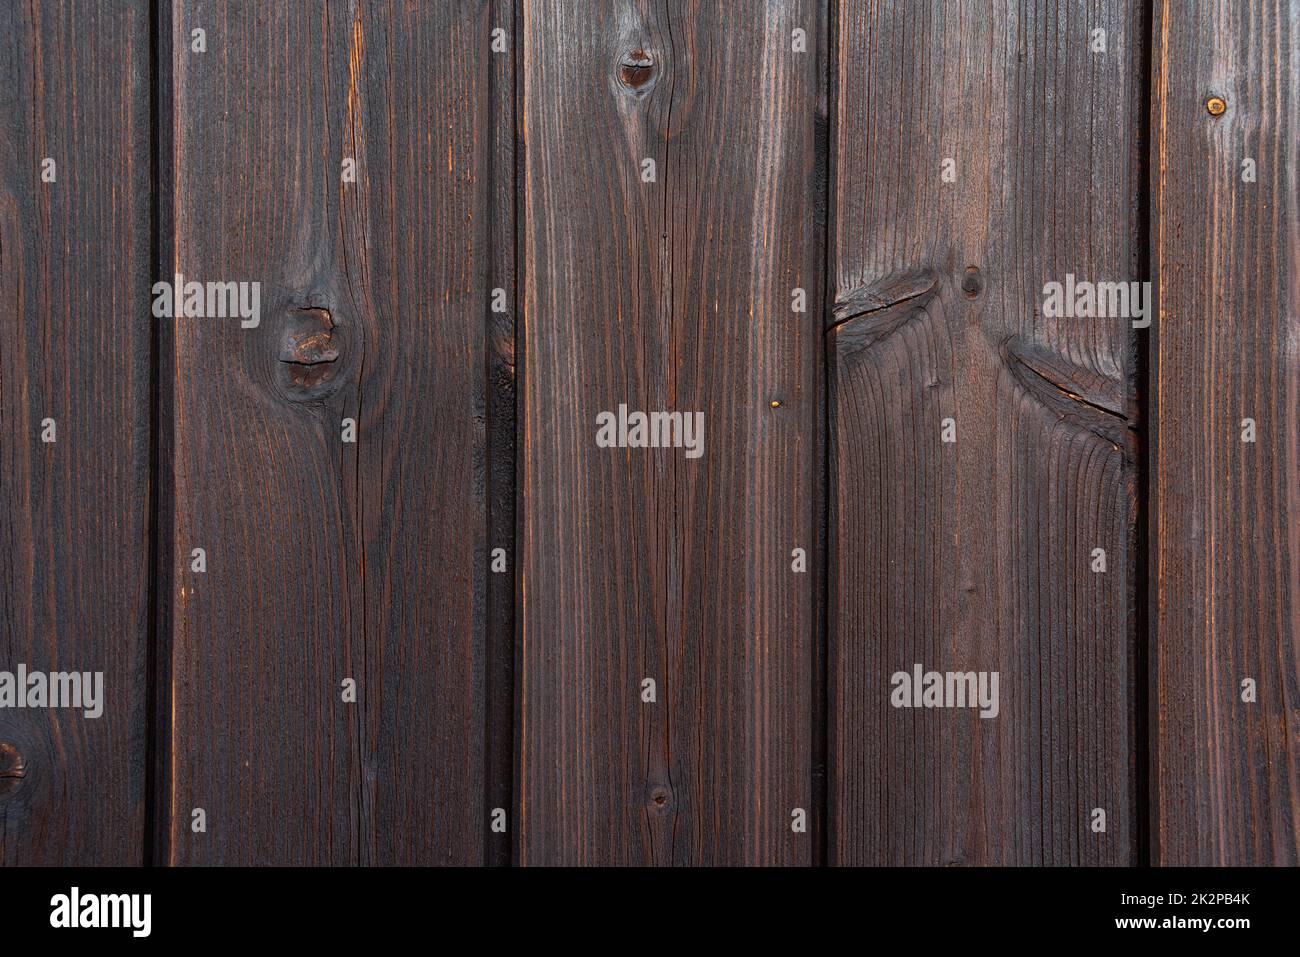 Alte braune ländliche Holzwand auf einem Balkon in dunklen Farben, detaillierte Bildtextur. Natürliche Holzkonstruktion, Hintergrund. Geeignet als Flatlay. Stockfoto